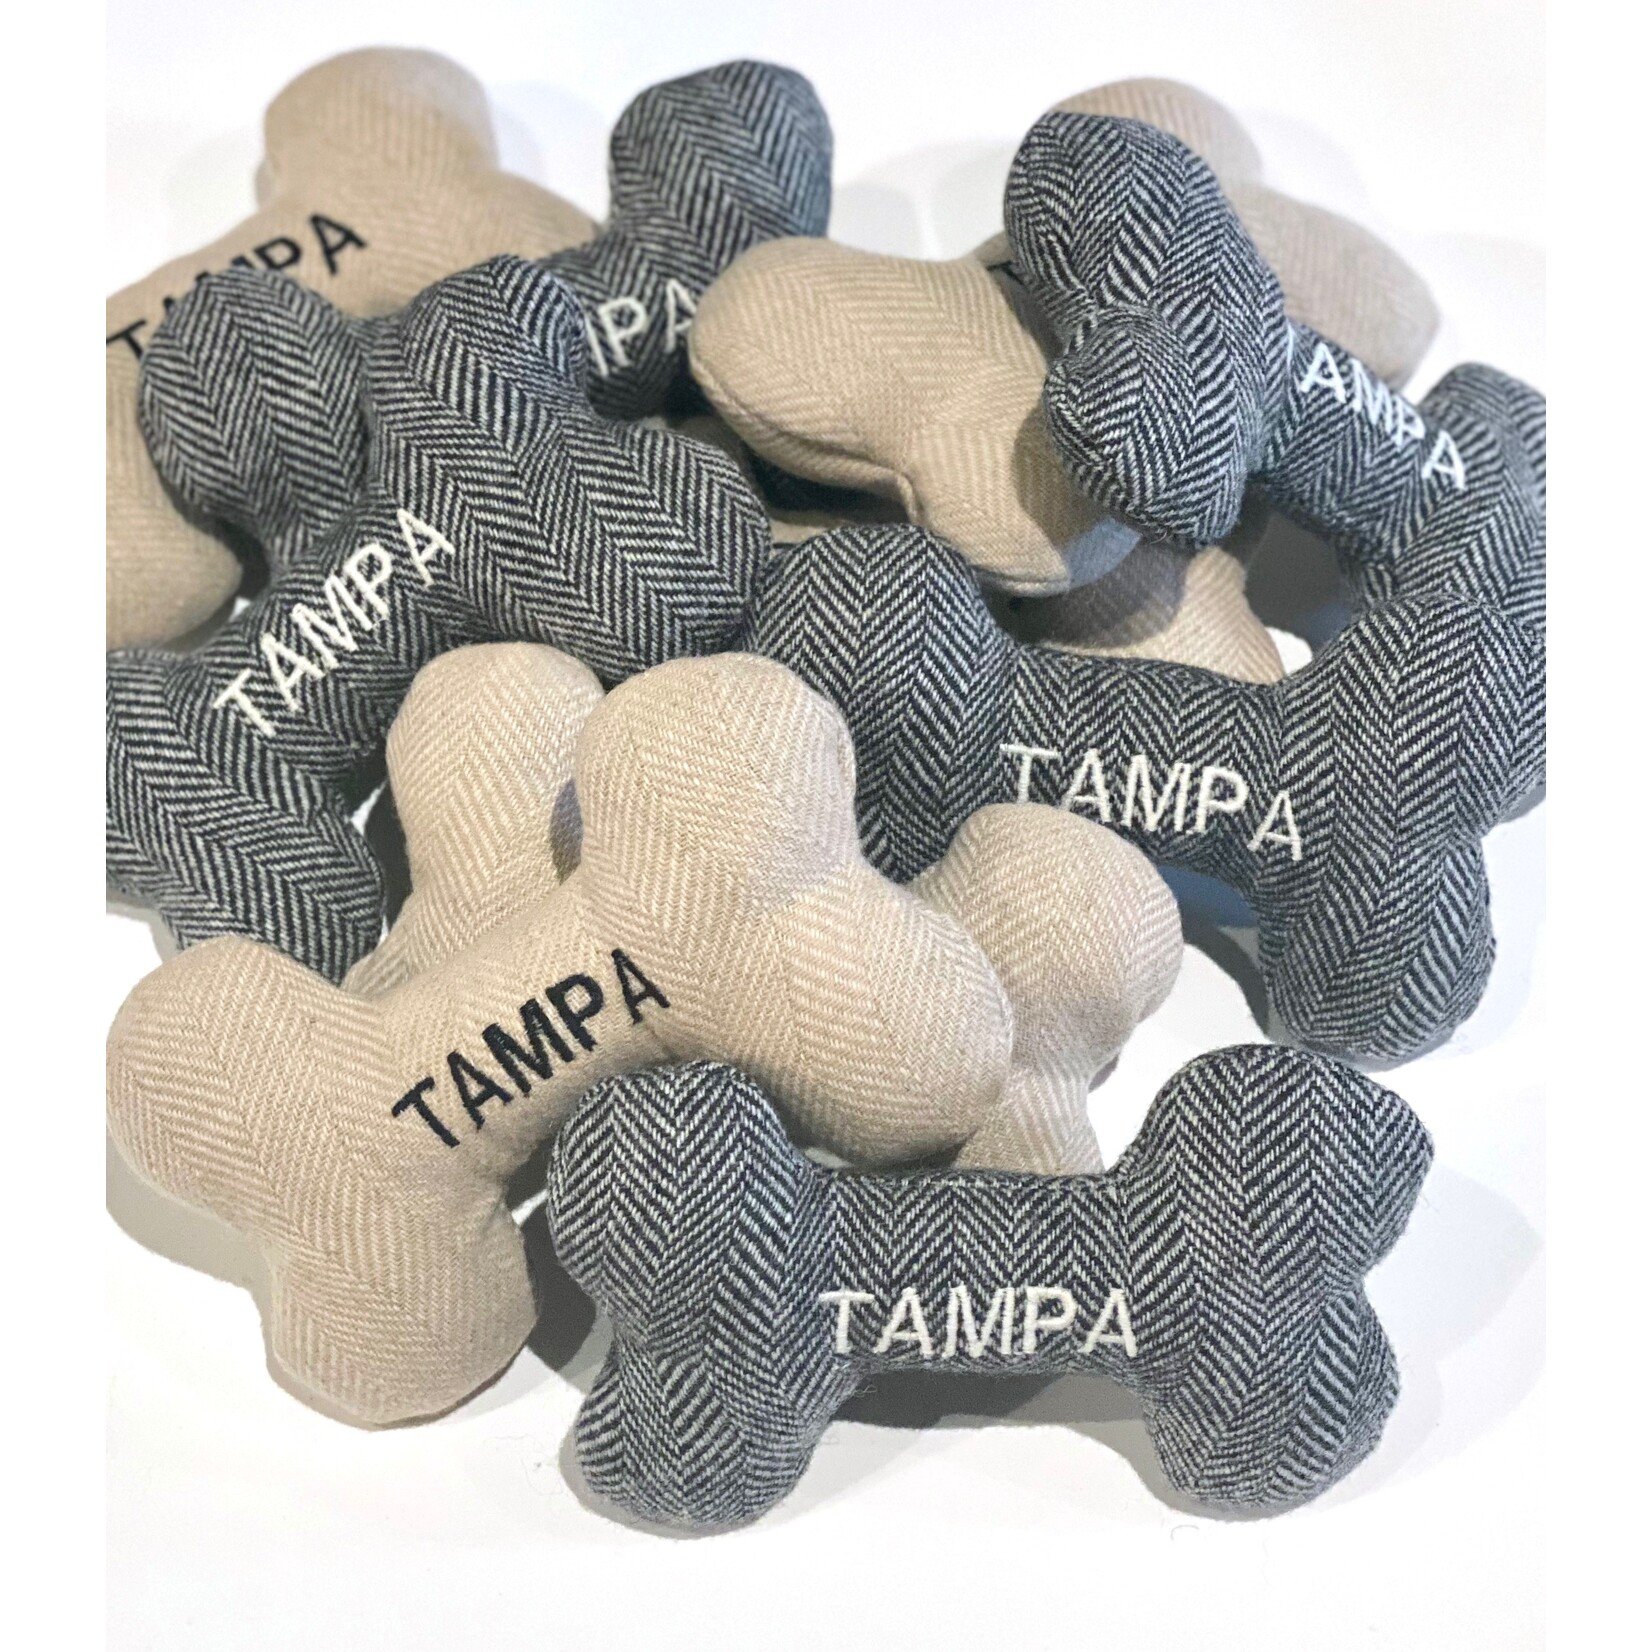 Hither Rabbit Tampa Bay Bone Toy